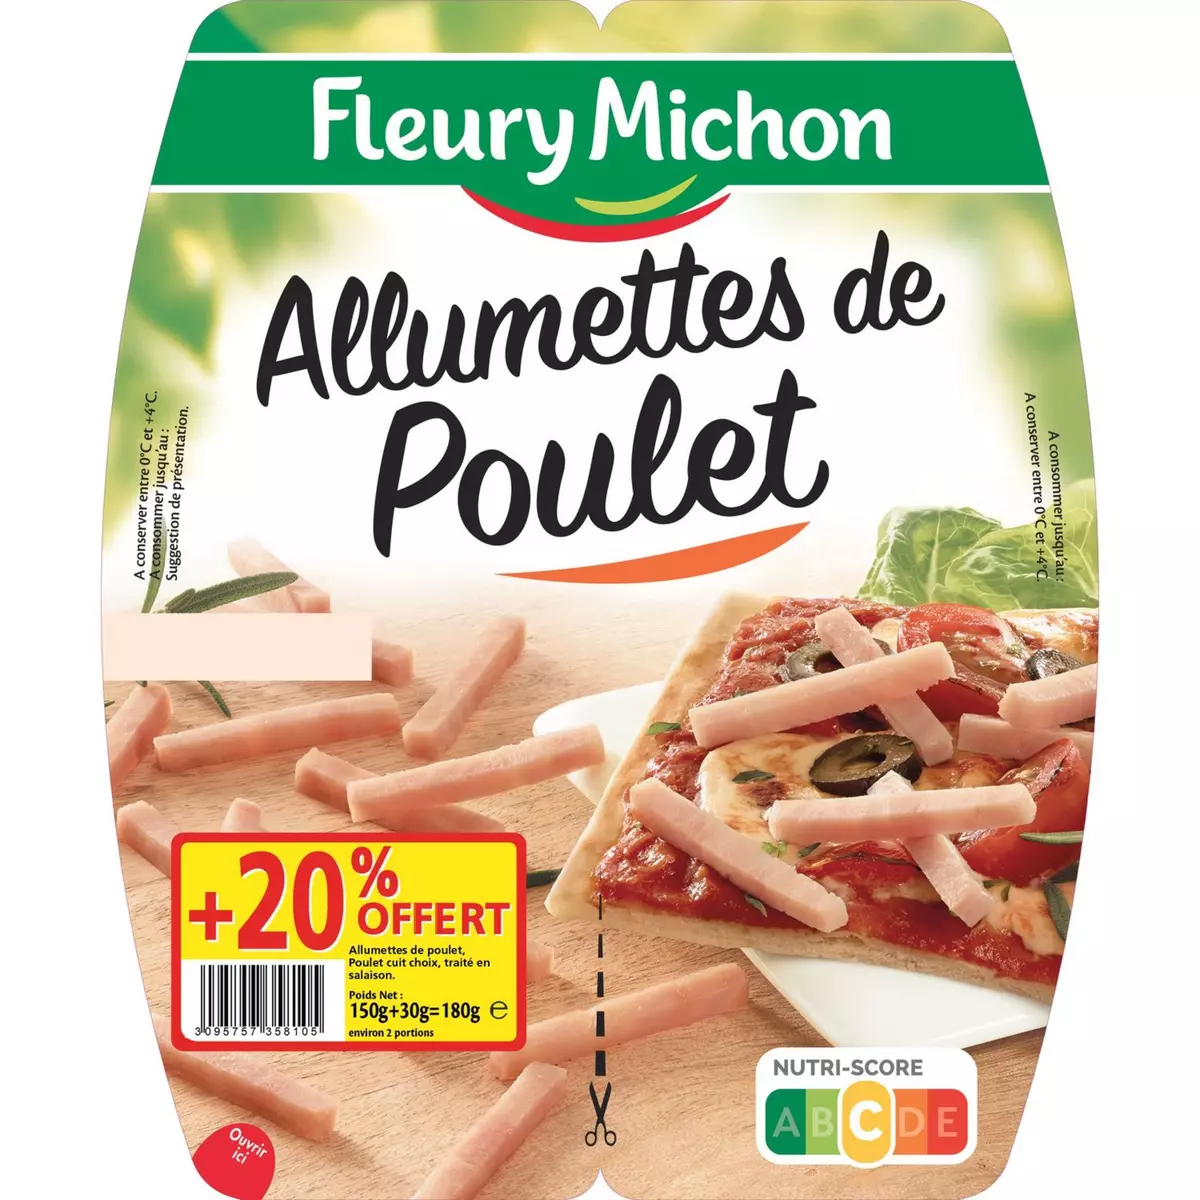 FLEURY MICHON Fleury Michon Allumettes de poulet 2x75g +20% offert 2x75g +20% offert